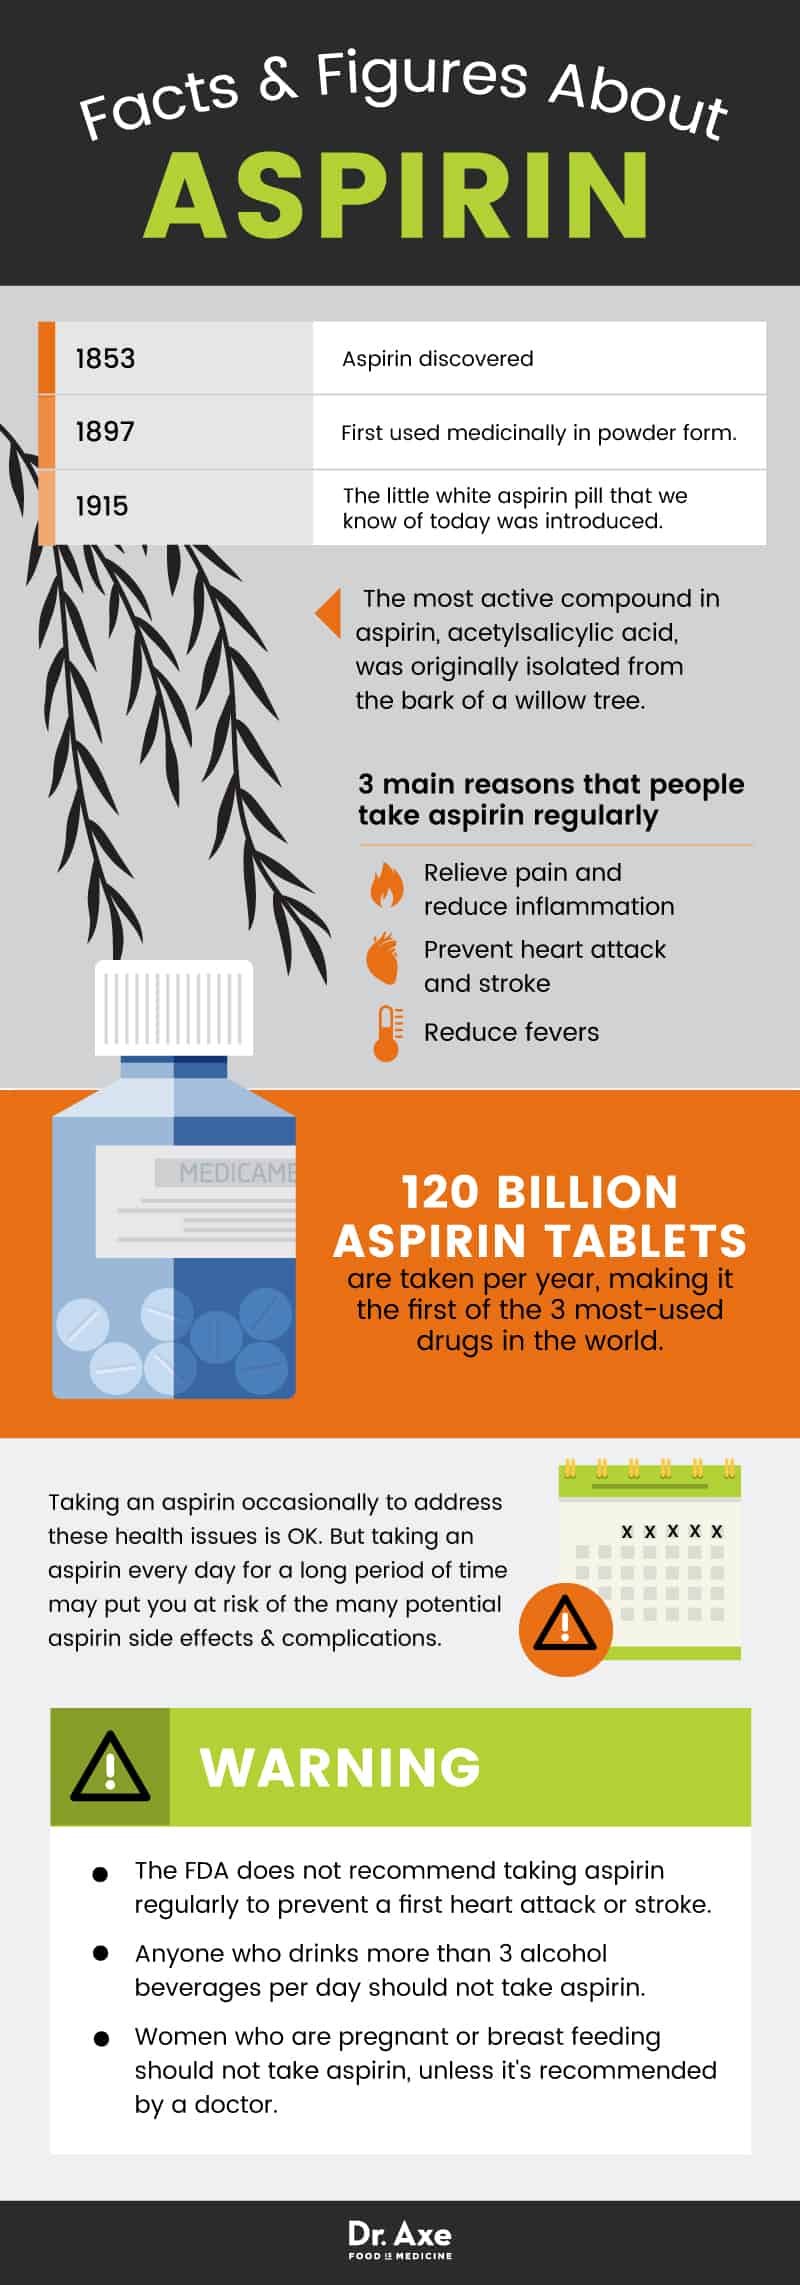 Aspirin-Nebenwirkungen: Aspirin-Fakten - Dr. Axe